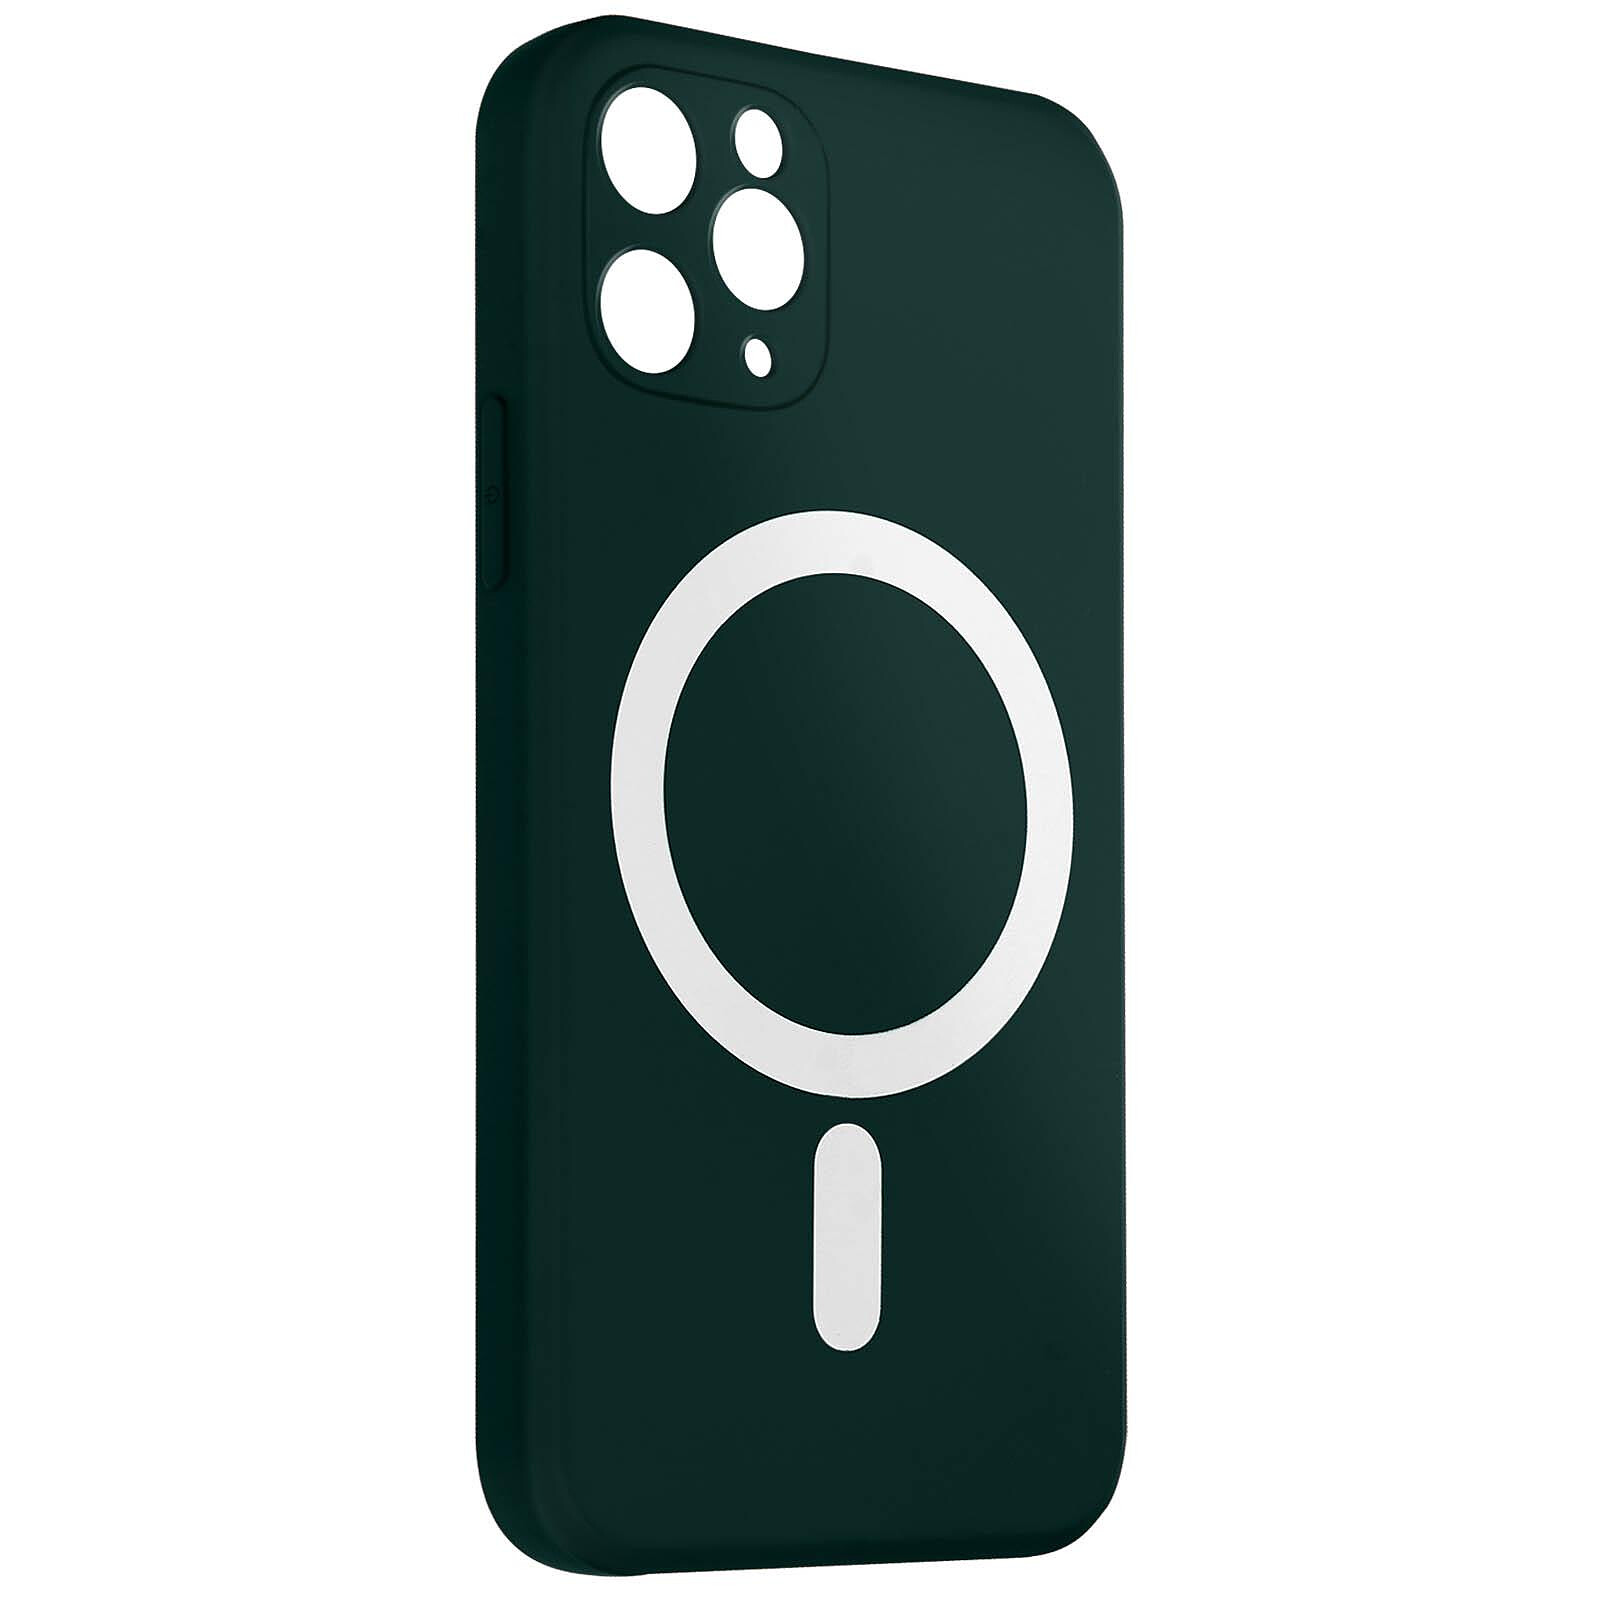 iPhone 11 Magsafe avec cache caméra (vert foncé) 